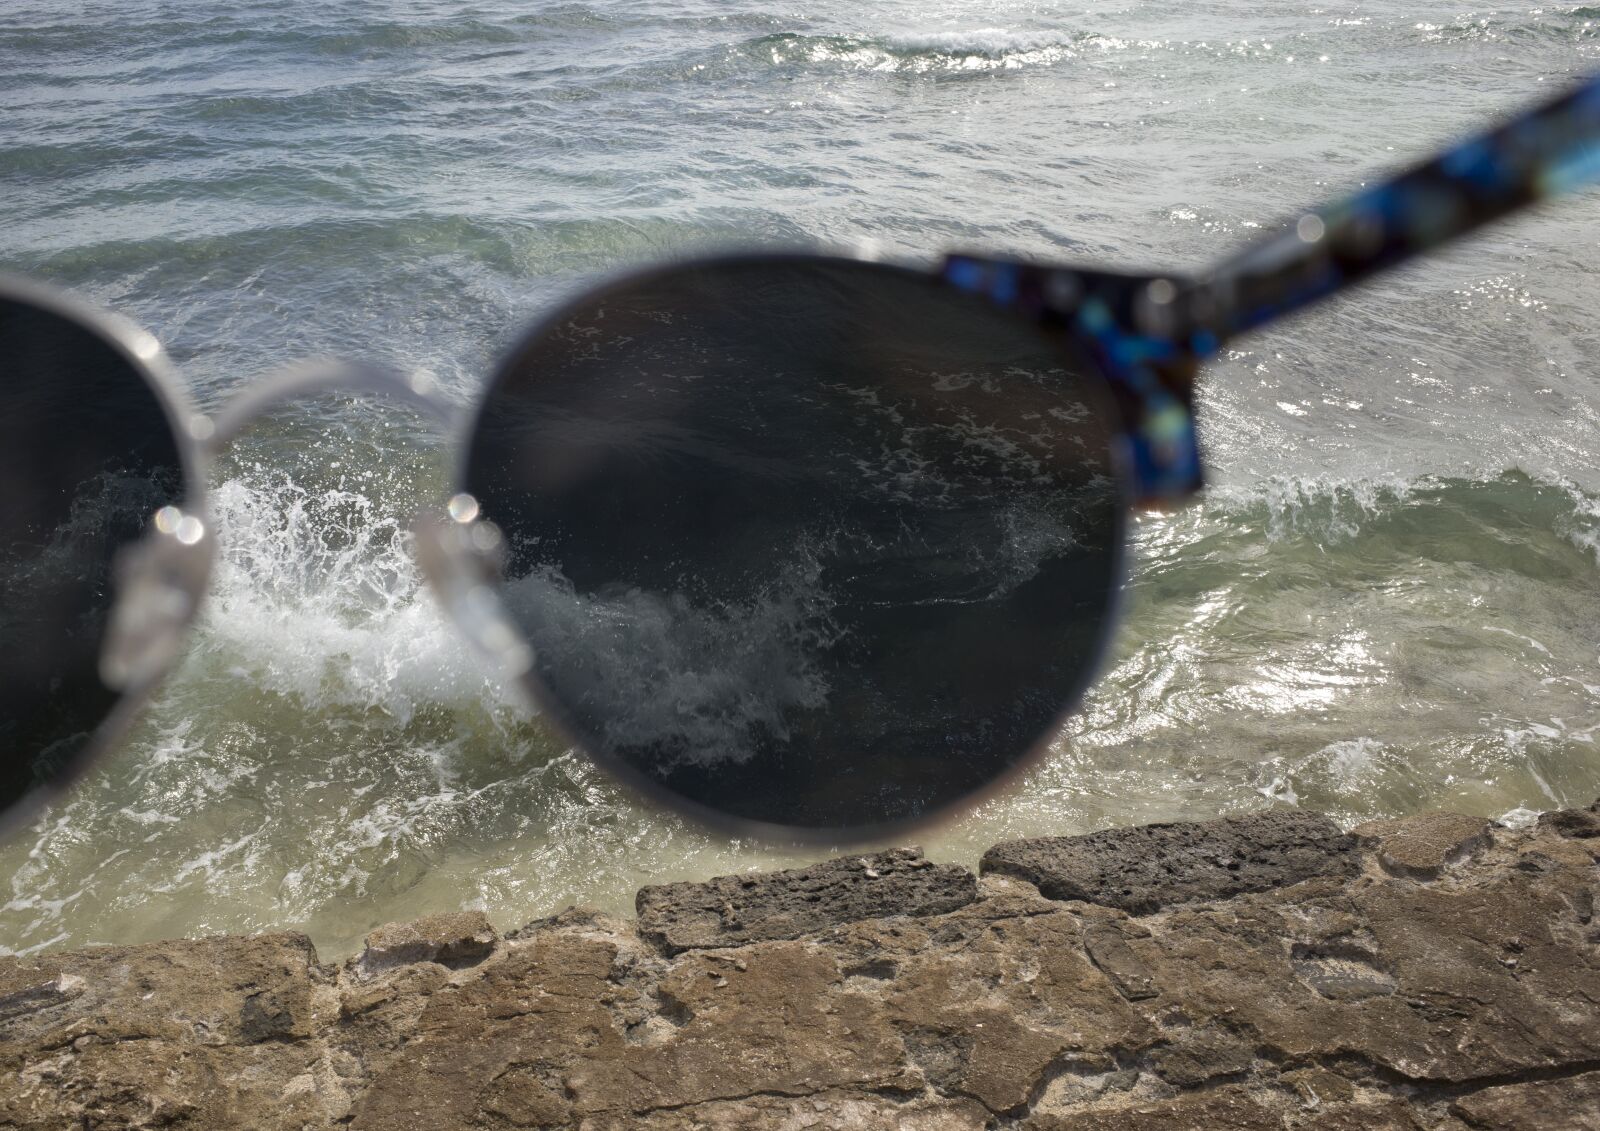 Ricoh GR II + GR Lens sample photo. Sunglasses, sea, beach photography